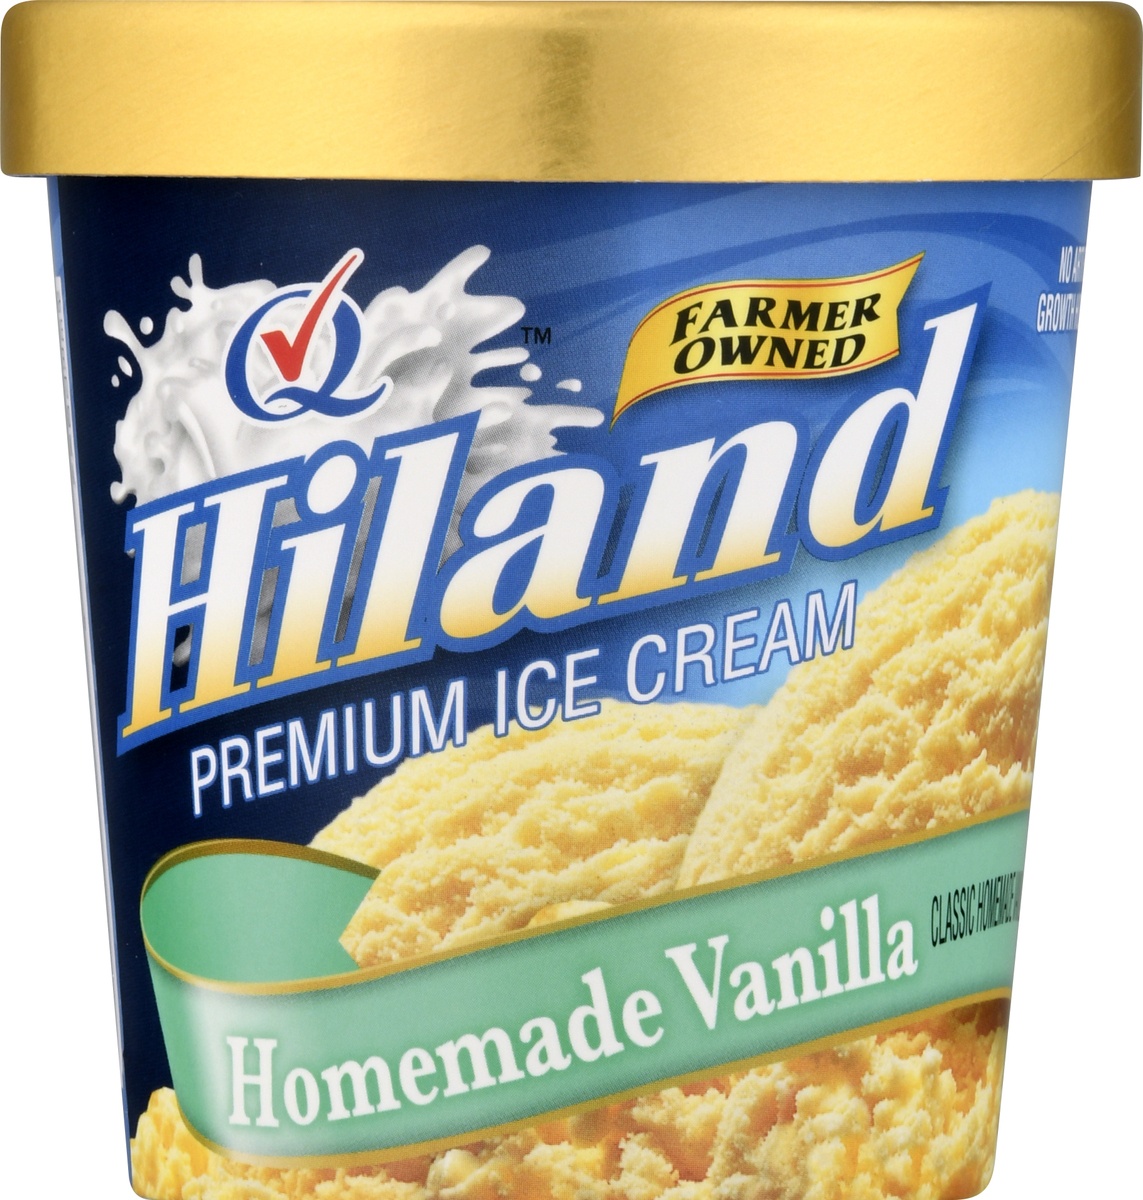 slide 9 of 10, Hiland Dairy Premium Ice Cream Homemade Vanilla, 1 pint